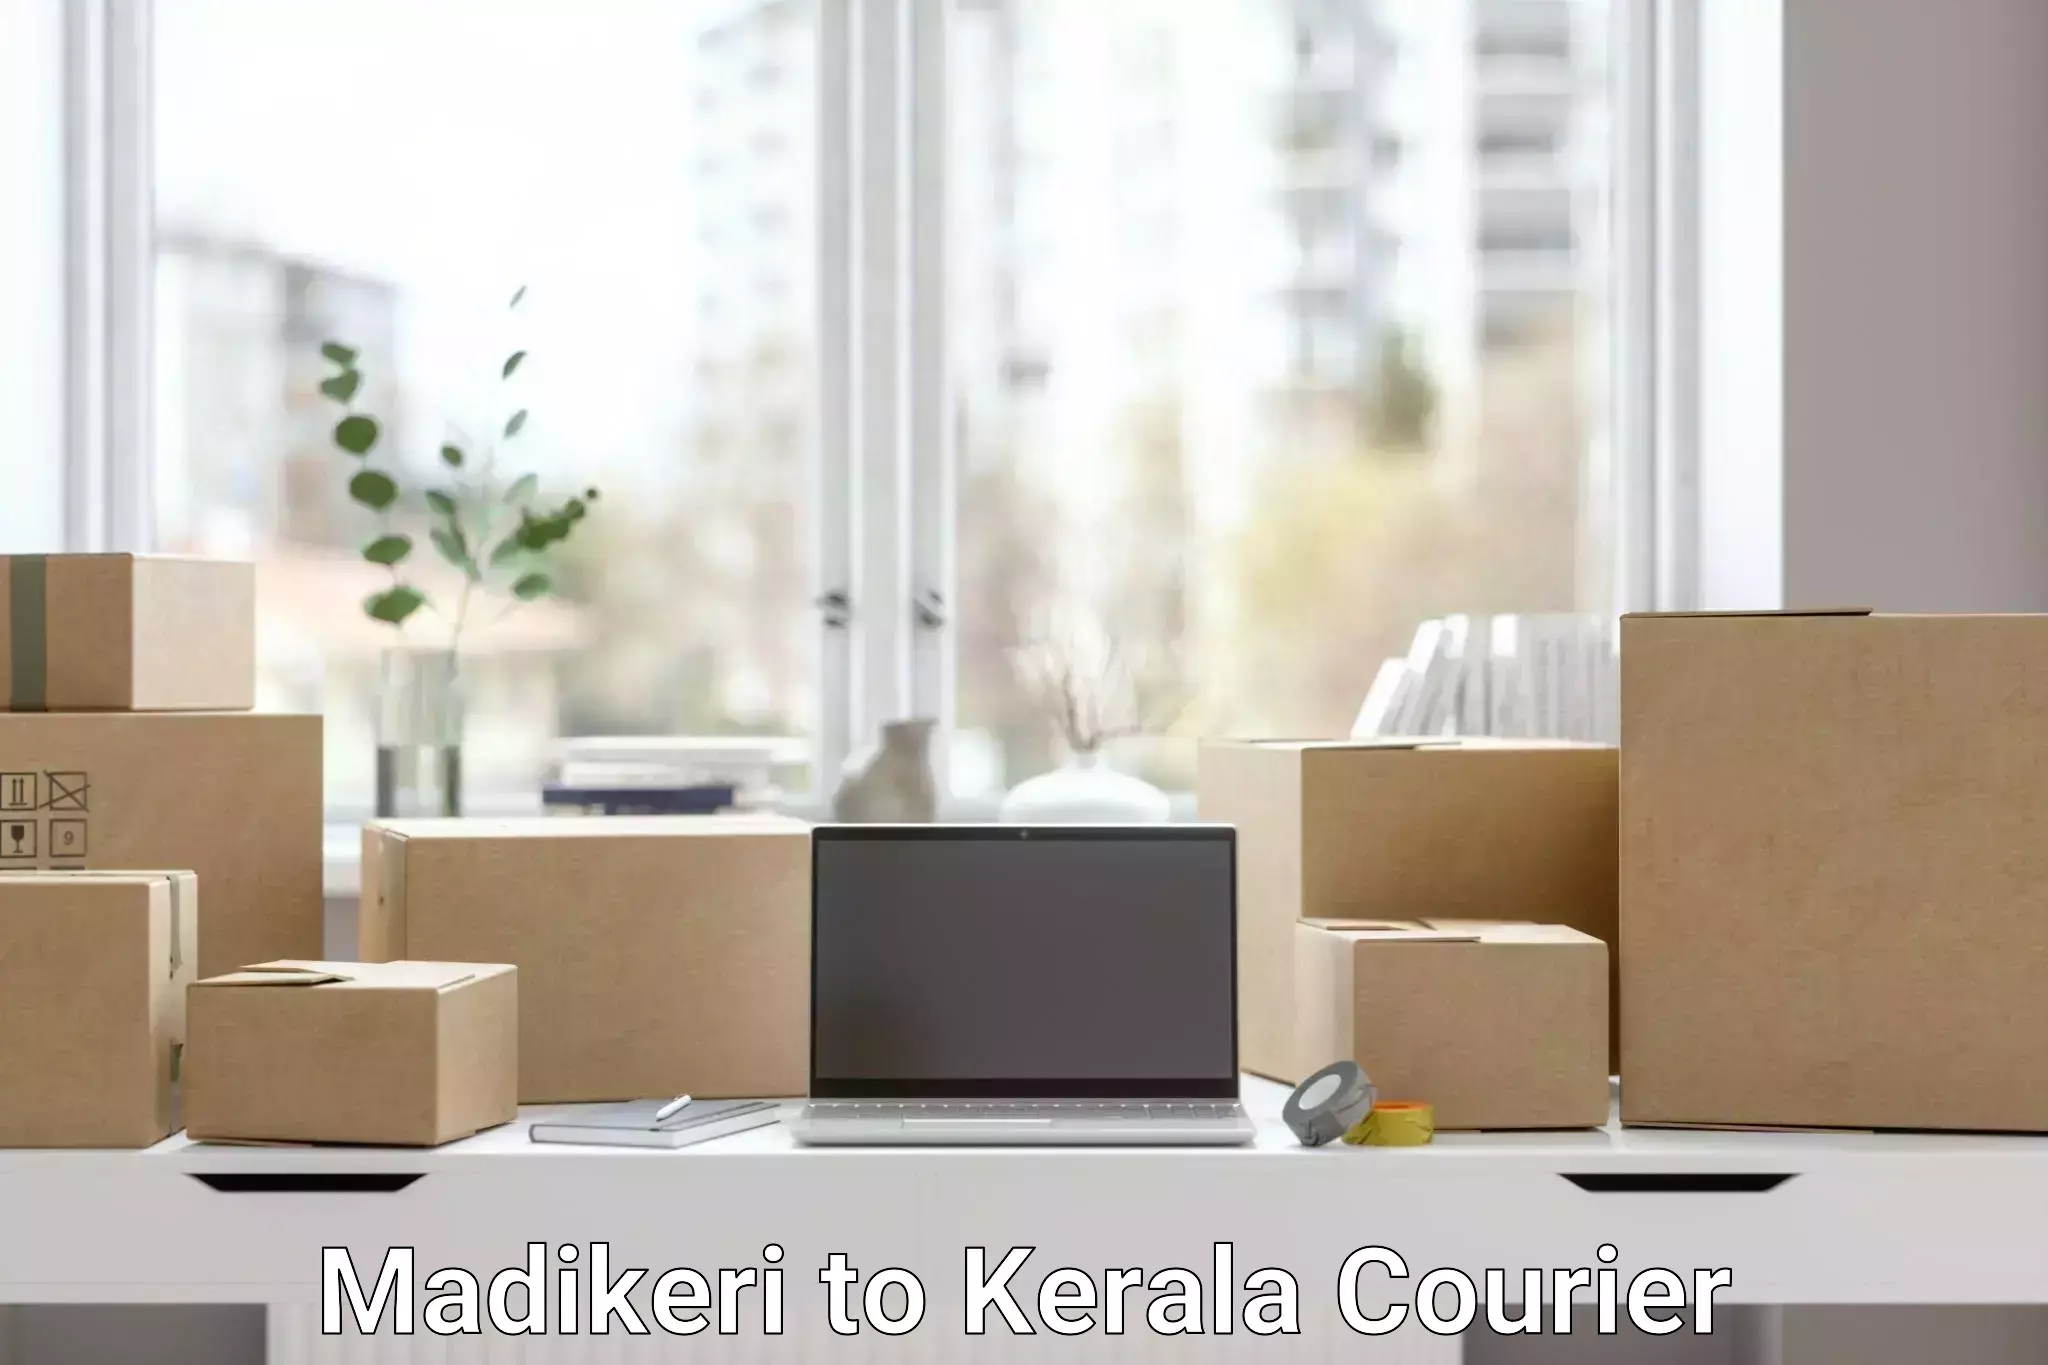 Premium courier solutions Madikeri to Thiruvananthapuram